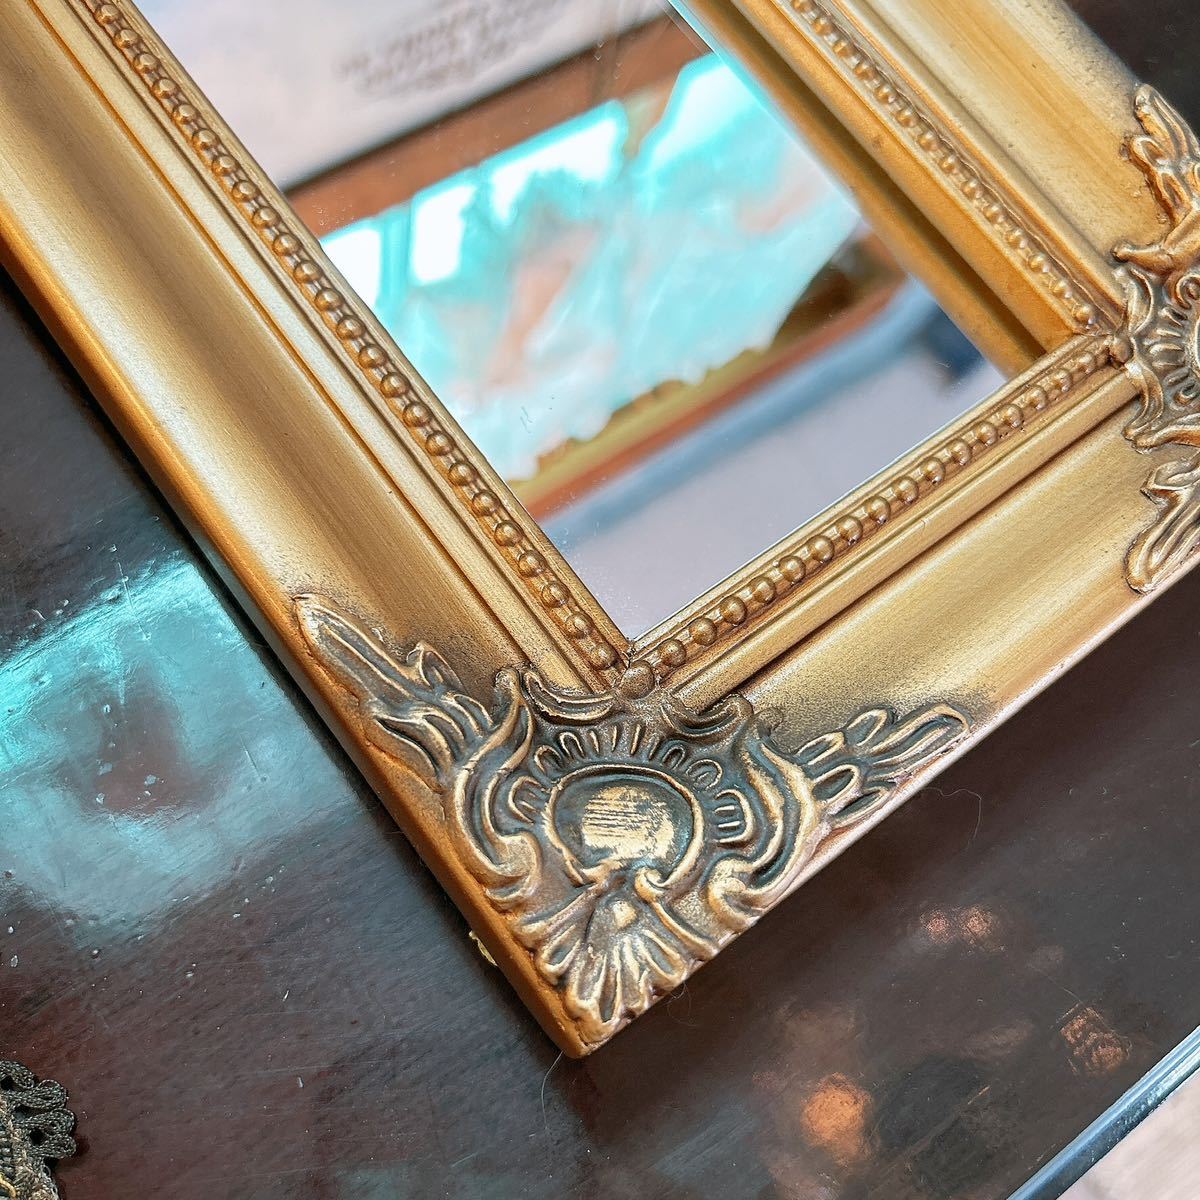 アンティークな部屋 おしゃれな鏡 一面鏡 No.2 ウォールミラー 1枚 壁掛け鏡 gold #インテリア装飾品 #ドレッサーミラー #ウォールミラー_画像6